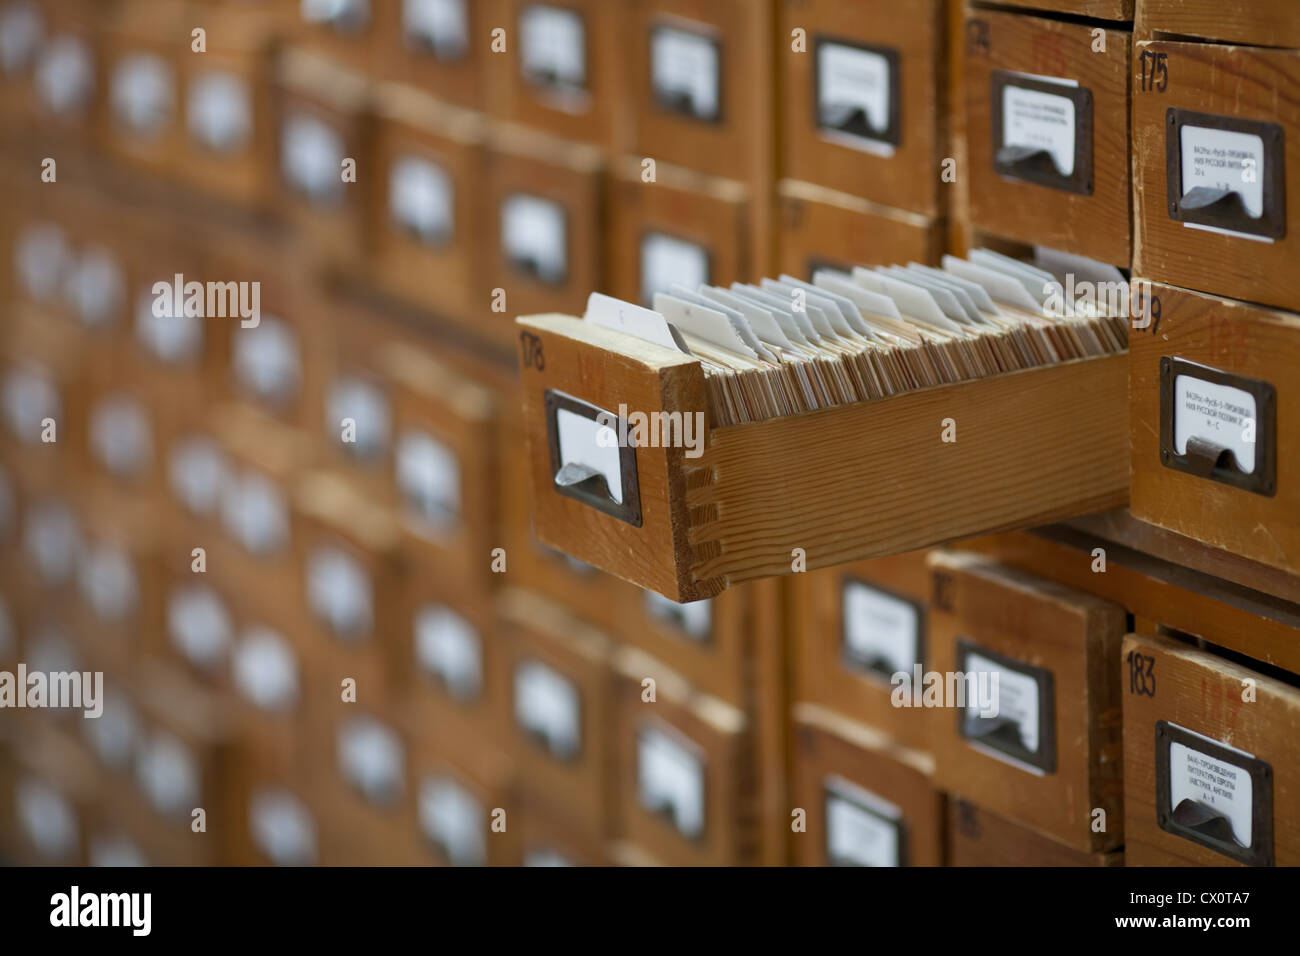 Concept de base de données. vintage cabinet. carte de bibliothèque ou d'un fichier catalogue. Banque D'Images